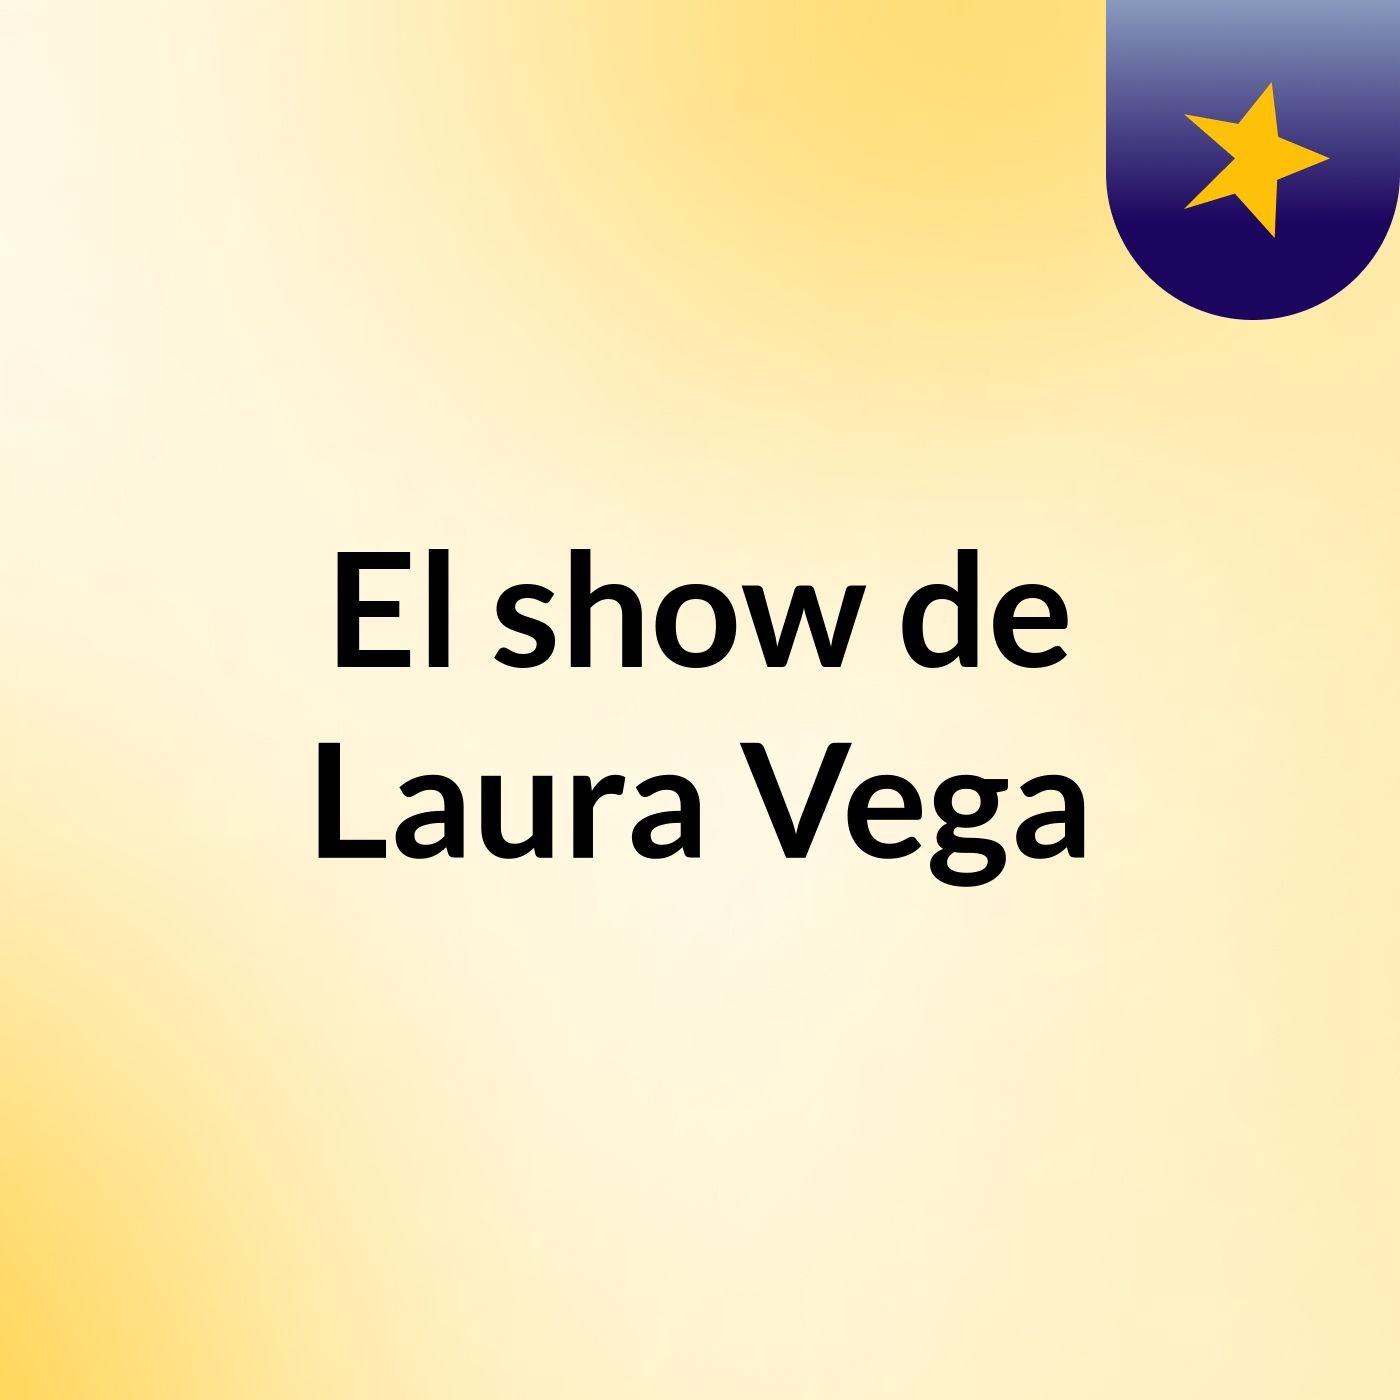 El show de Laura Vega